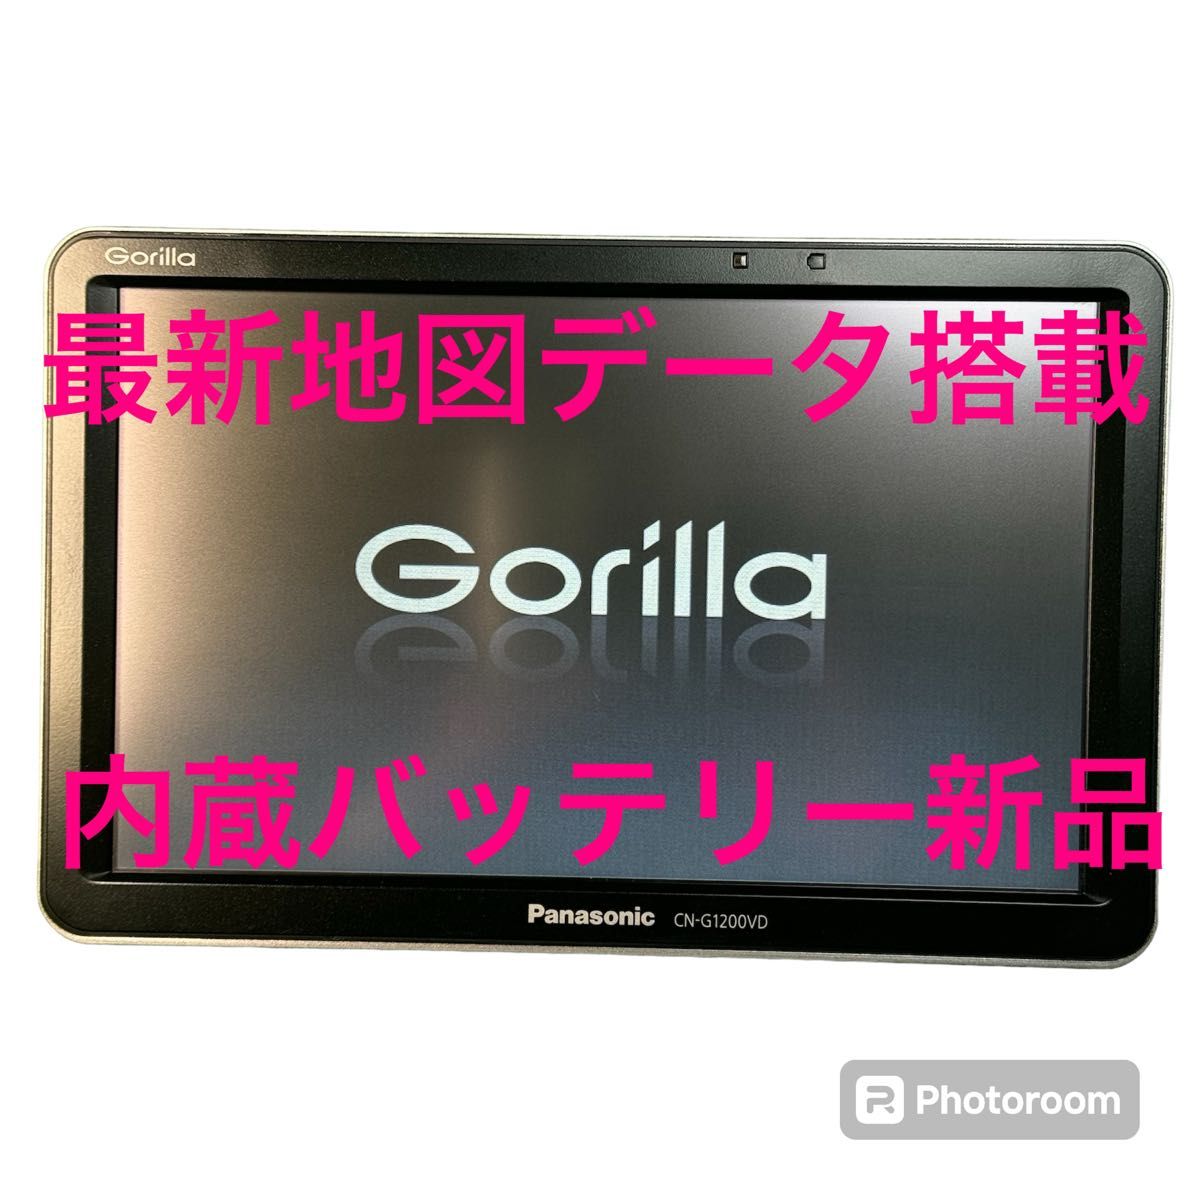 希少！最新地図データ搭載Panasonic Gorilla CN-G1200VD パナソニック ポータブルナビ Panasonic